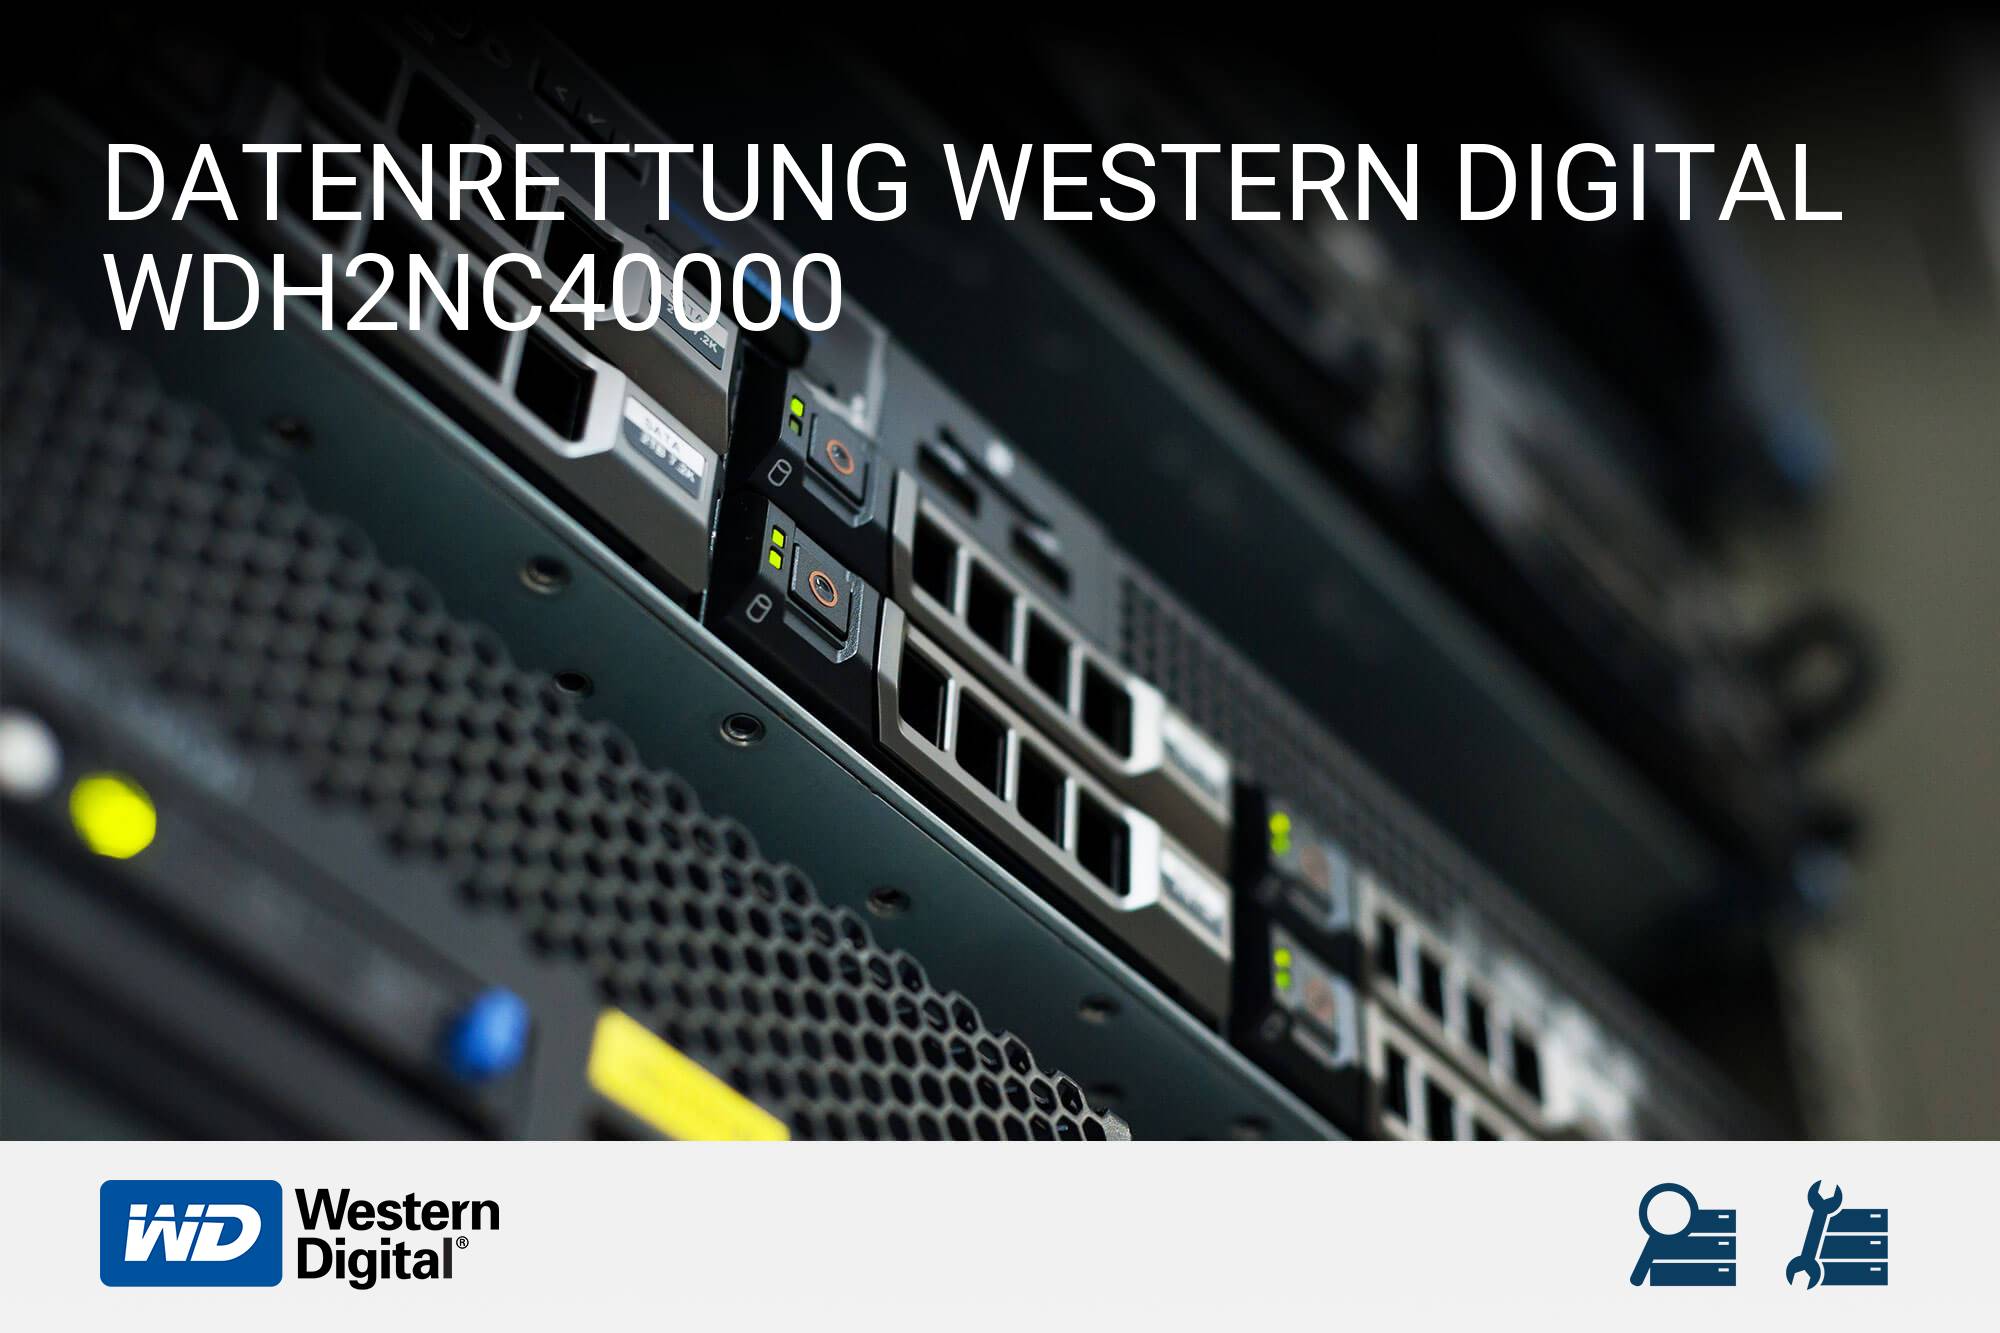 Western Digital WDH2NC40000